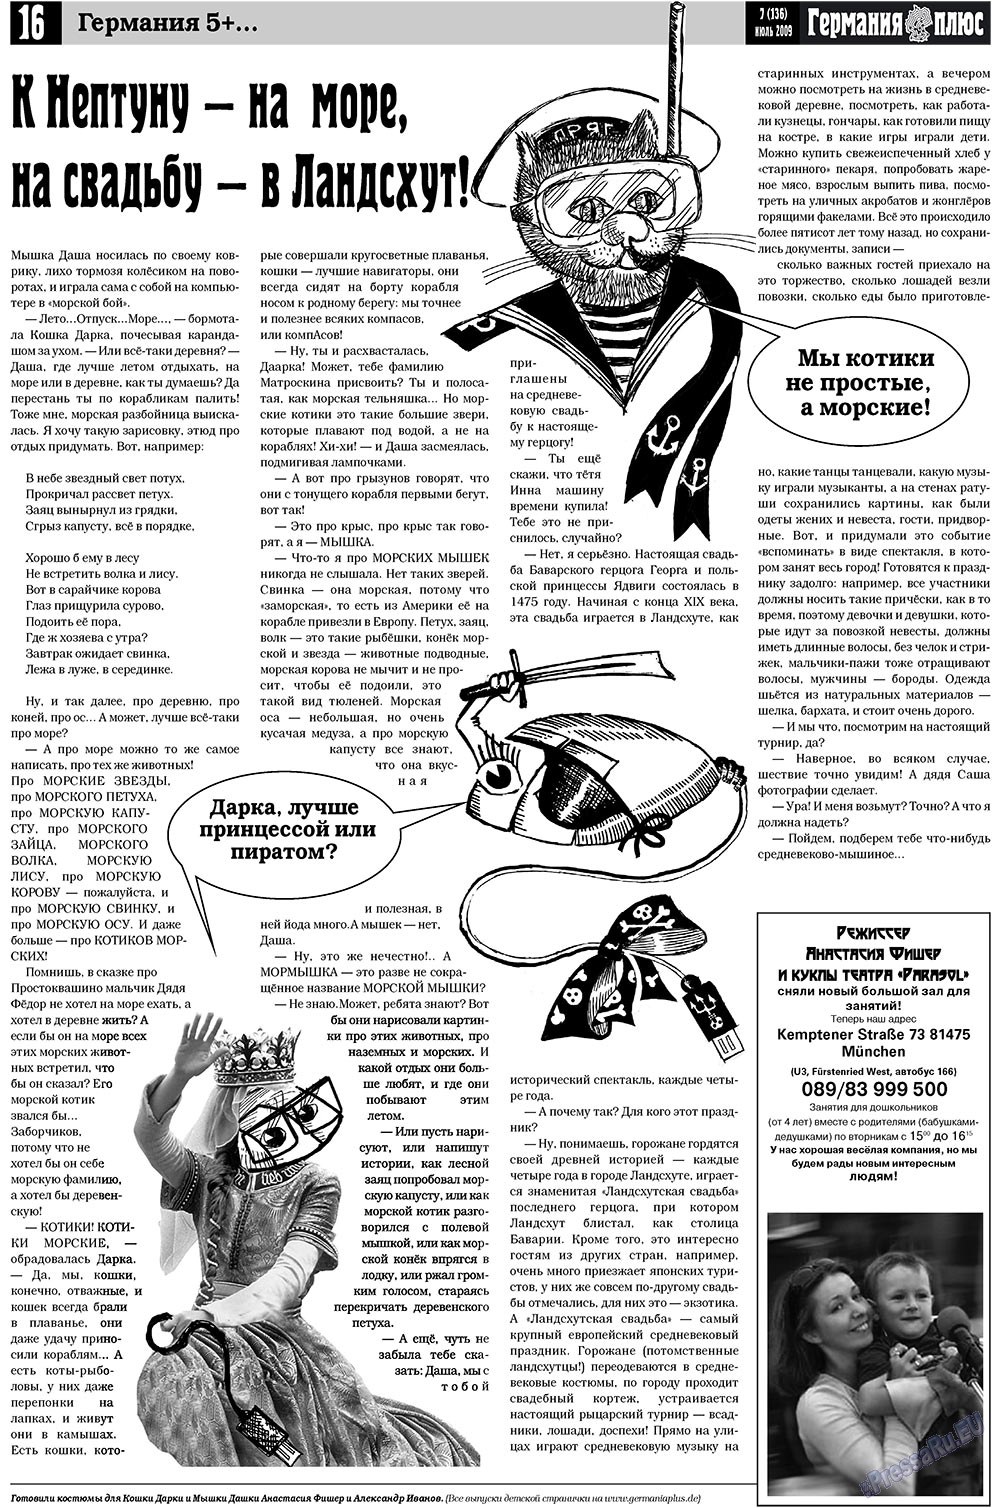 Германия плюс, газета. 2009 №7 стр.20